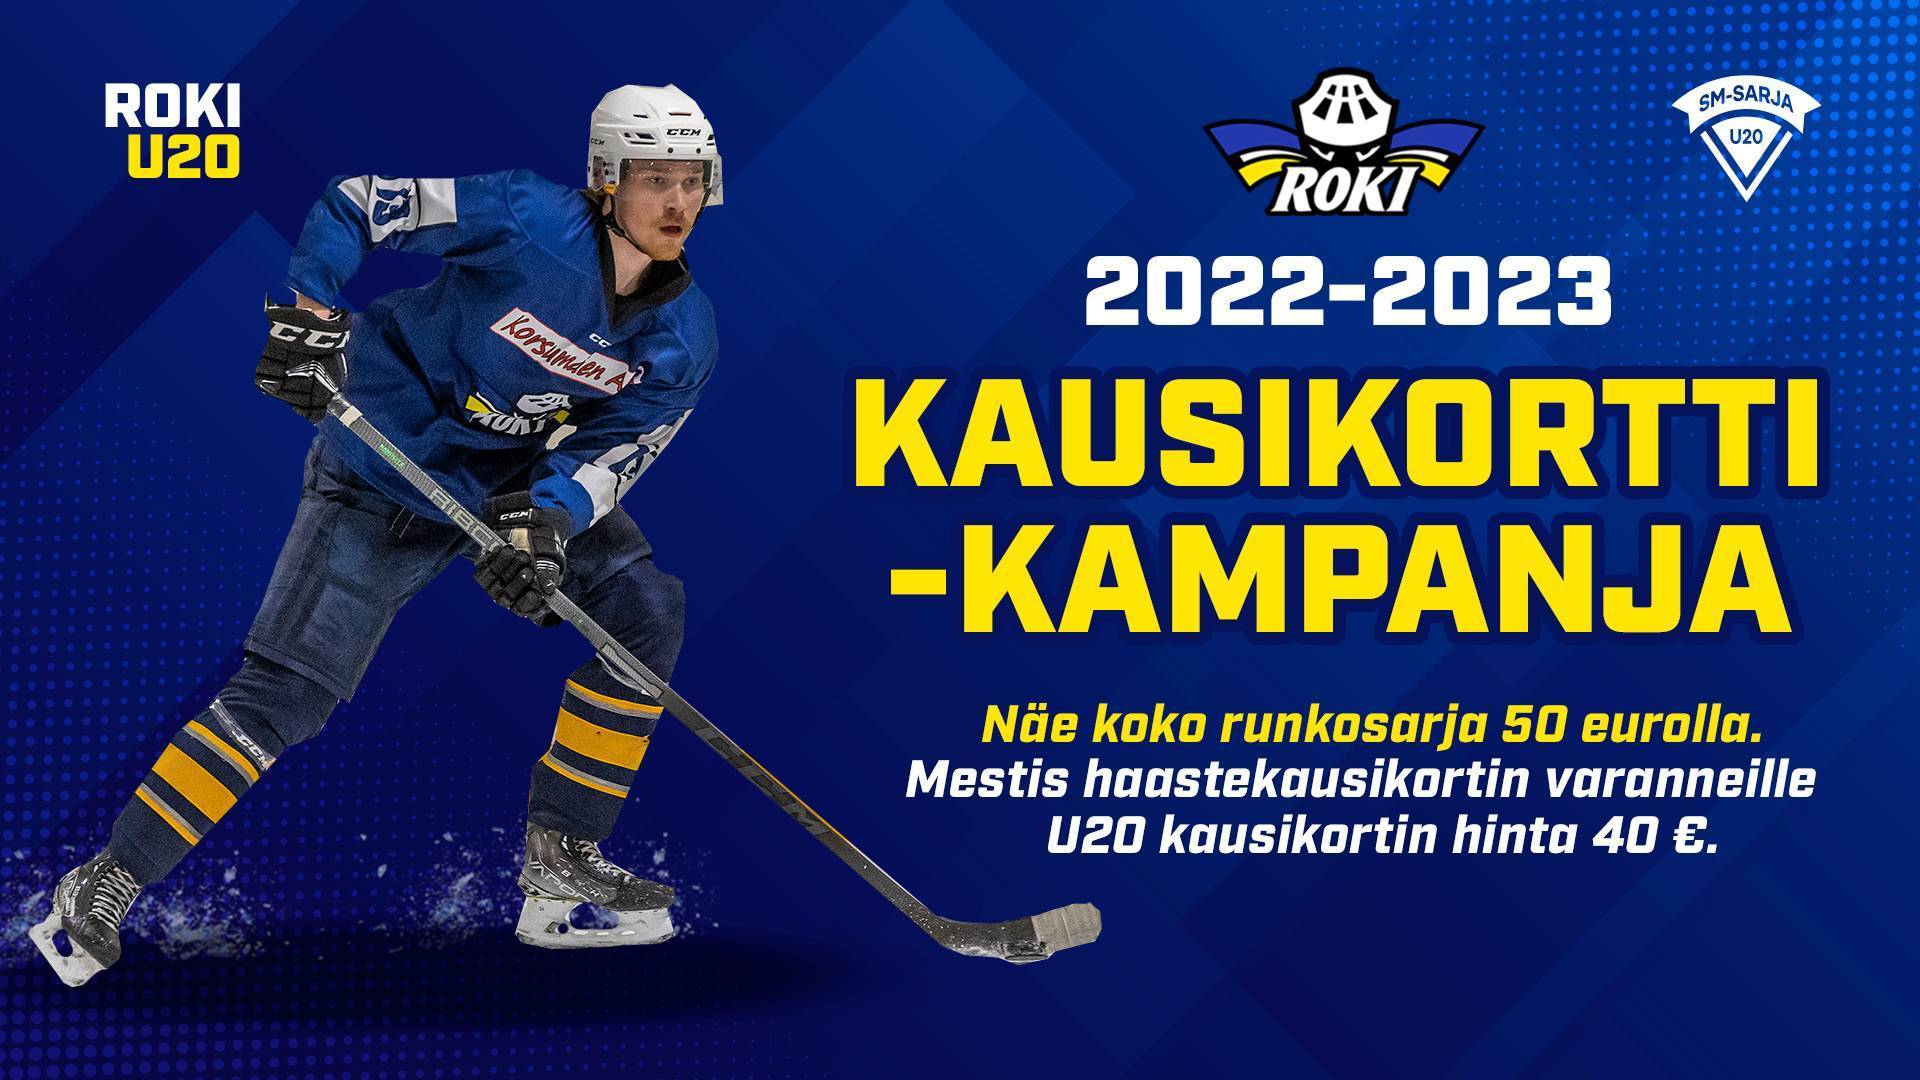 RoKi U20 kausikortin varauslomake 2022-2023